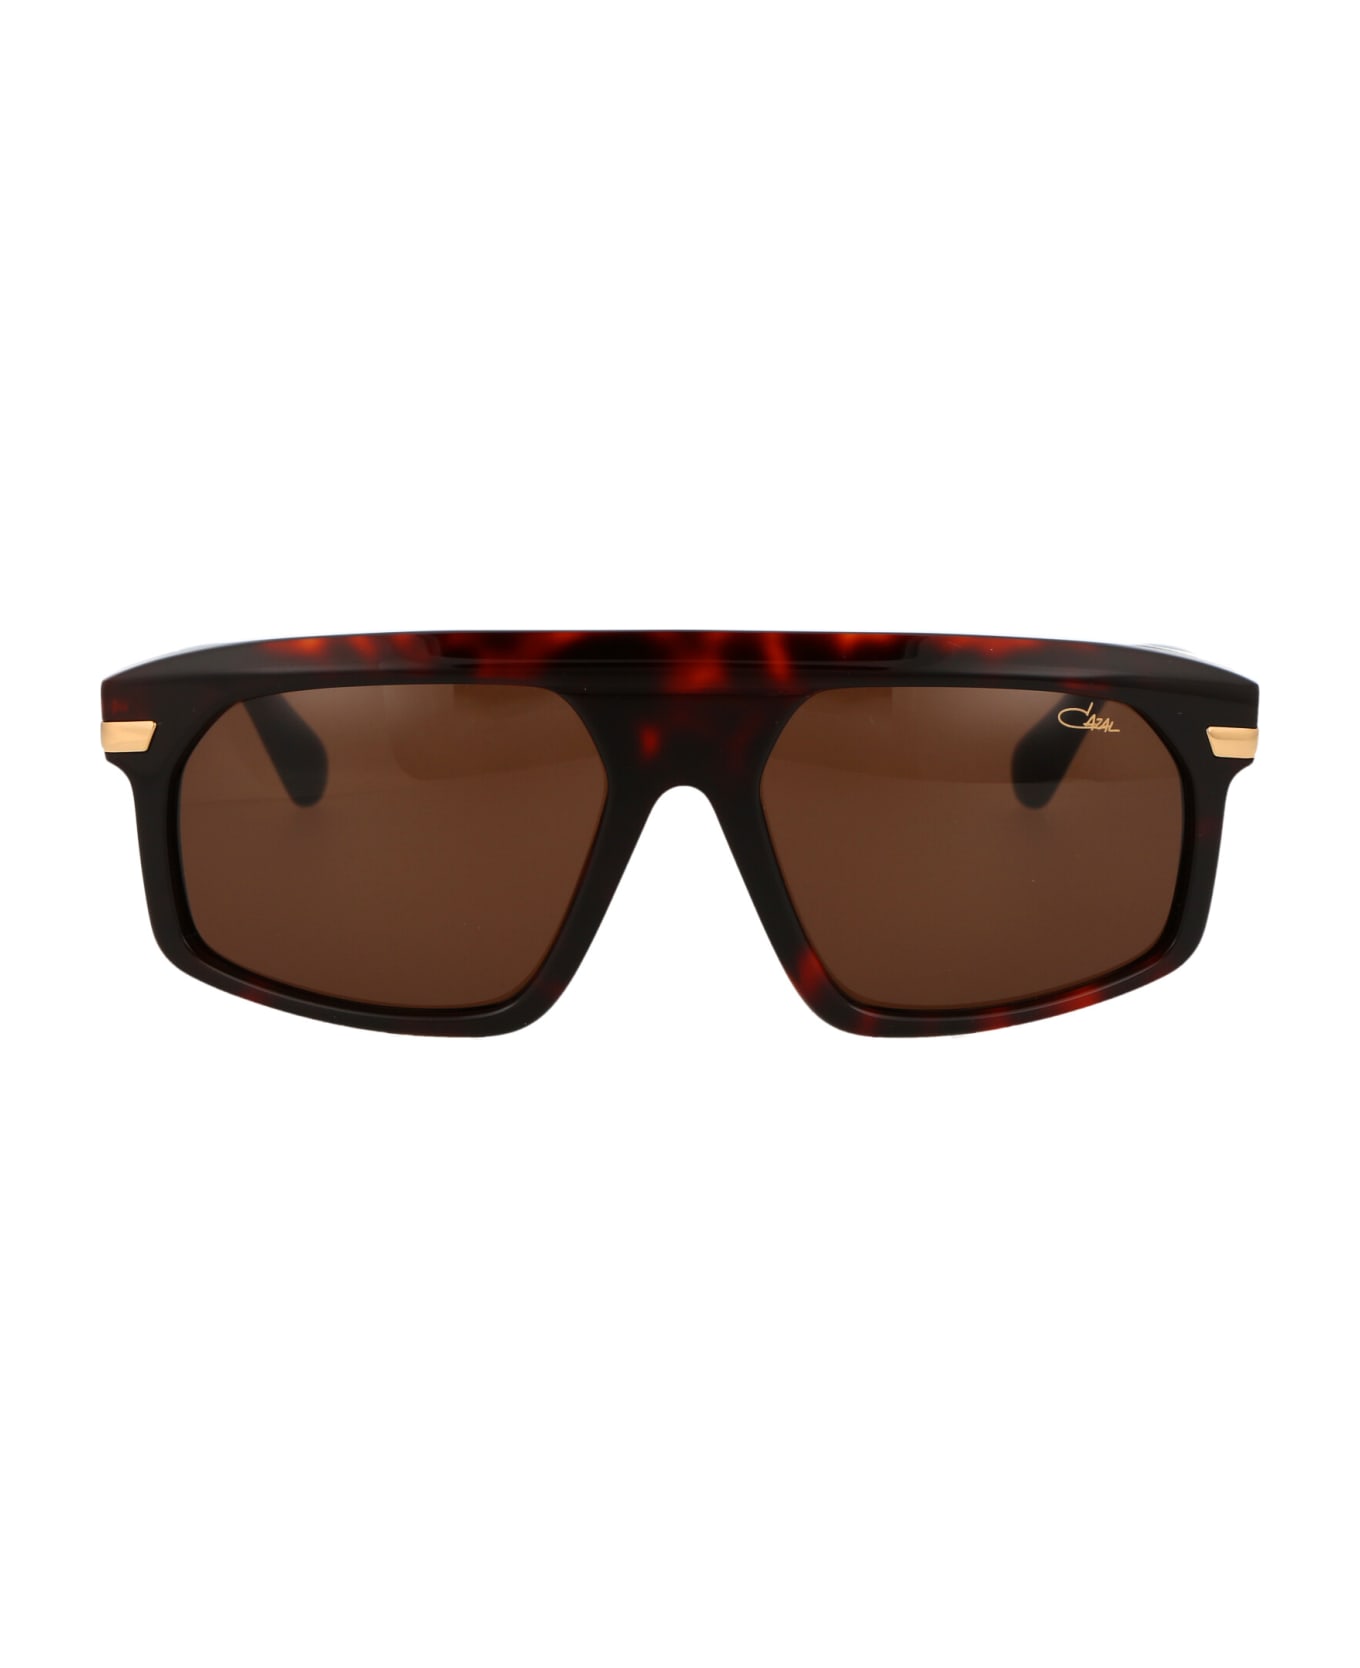 Cazal Mod. 8504 Sunglasses - 002 HAVANA サングラス